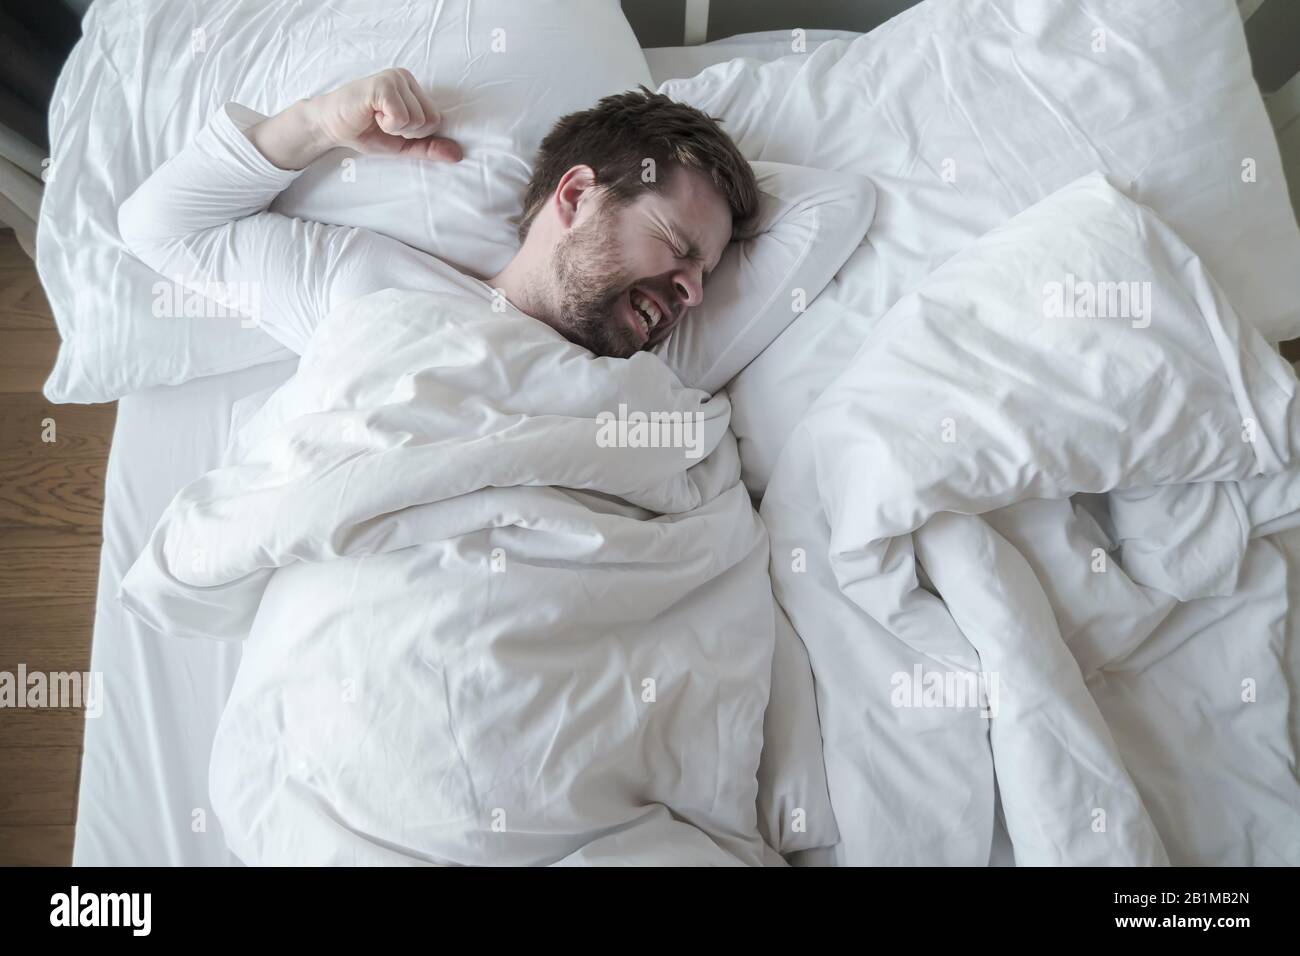 El hombre en pijama blanco tiene una pesadilla terrible, muele los dientes y preparó un puño para la protección, acostado en su cama. Foto de stock